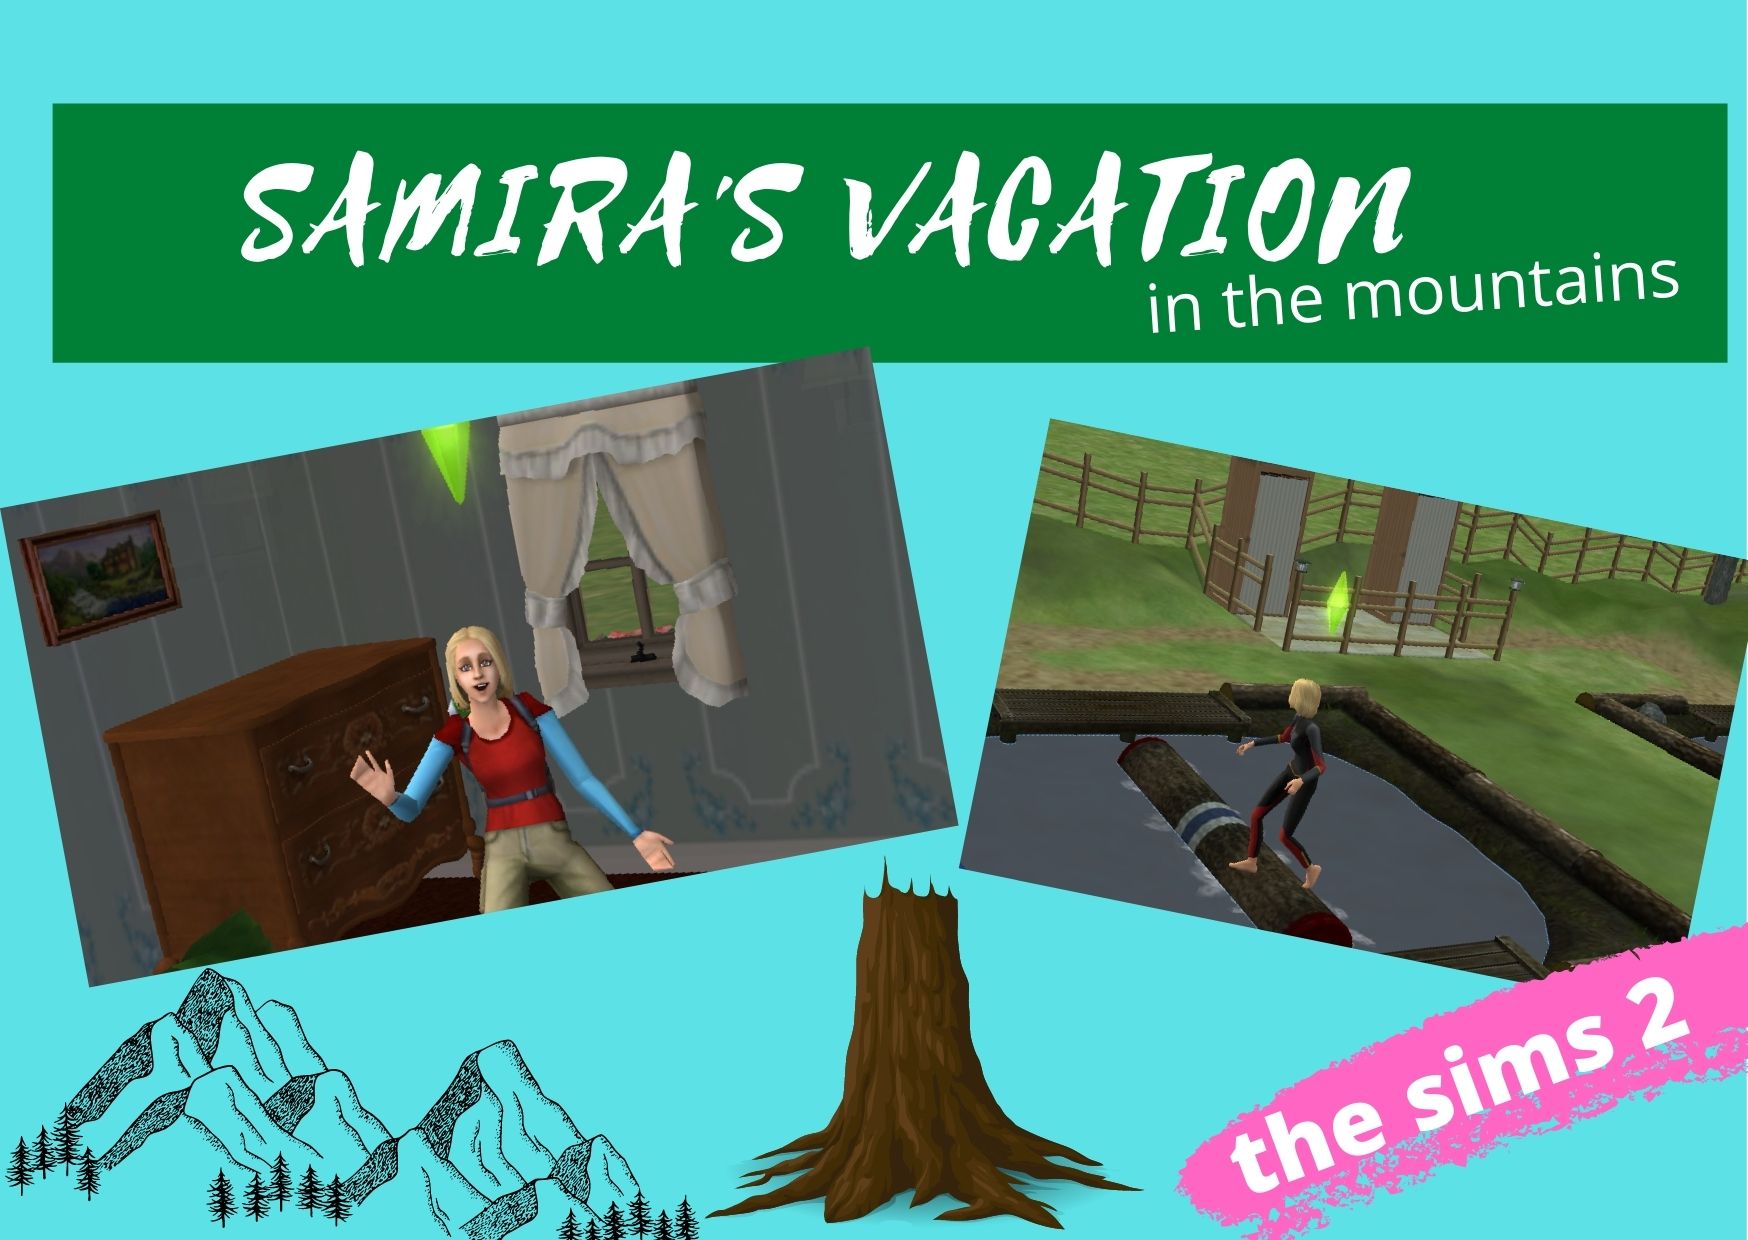 Samira's Vacation.jpg